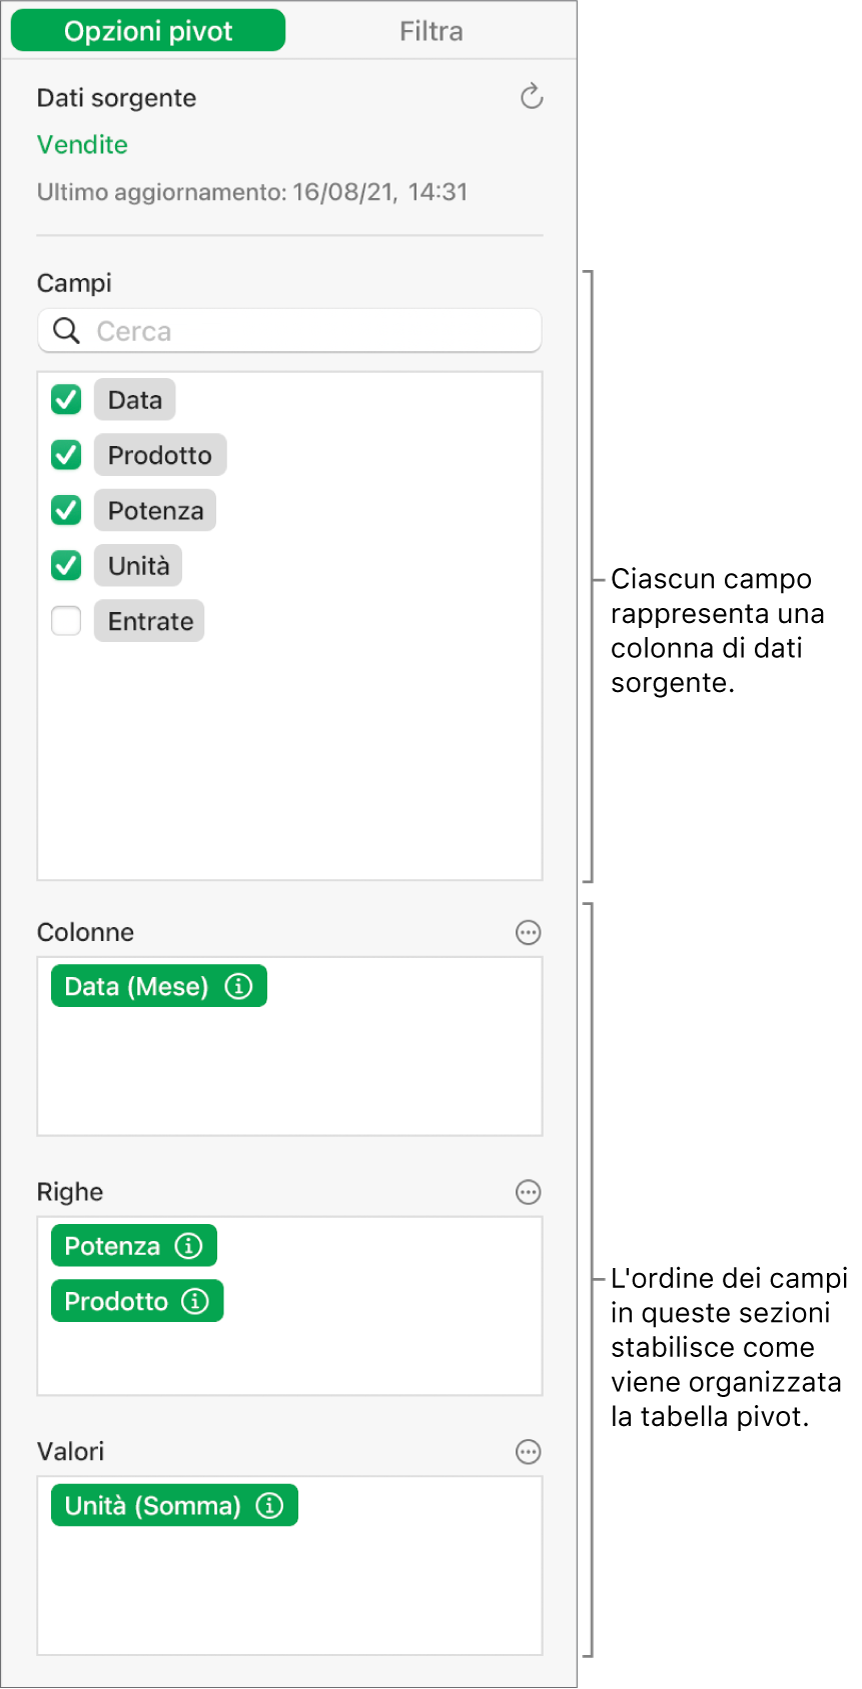 Il menu “Opzioni pivot” che mostra campi nelle sezioni Colonne, Righe e Valori, nonché i controlli per modificare i campi e aggiornare la tabella pivot.